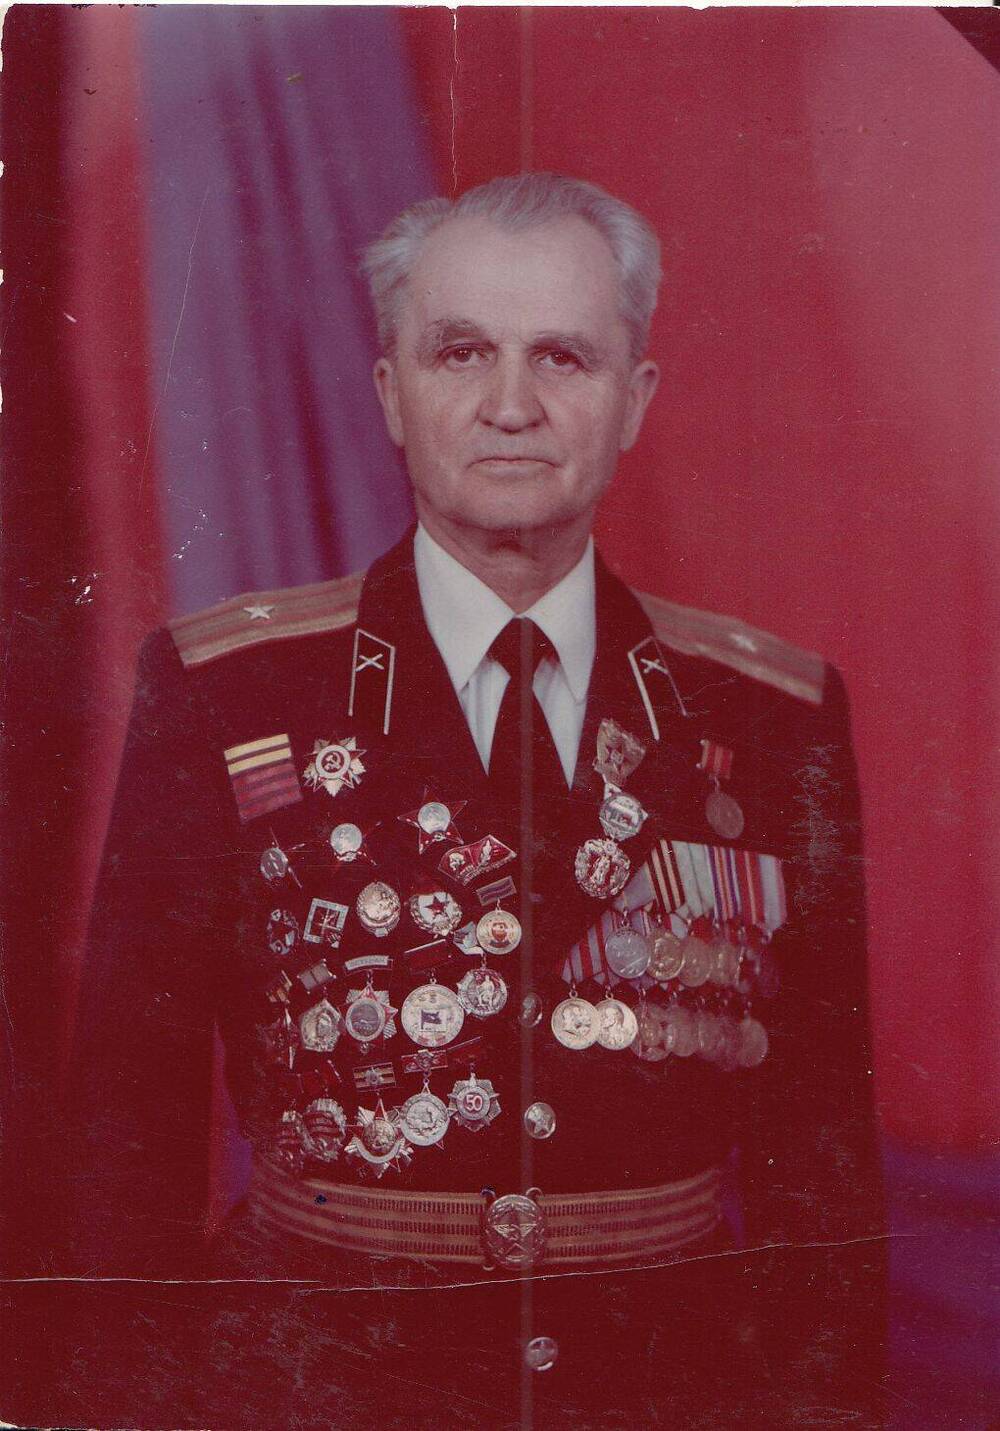 Фотография: Кечко Николай Николаевич, бывший курсант Подольского артиллерийского училища